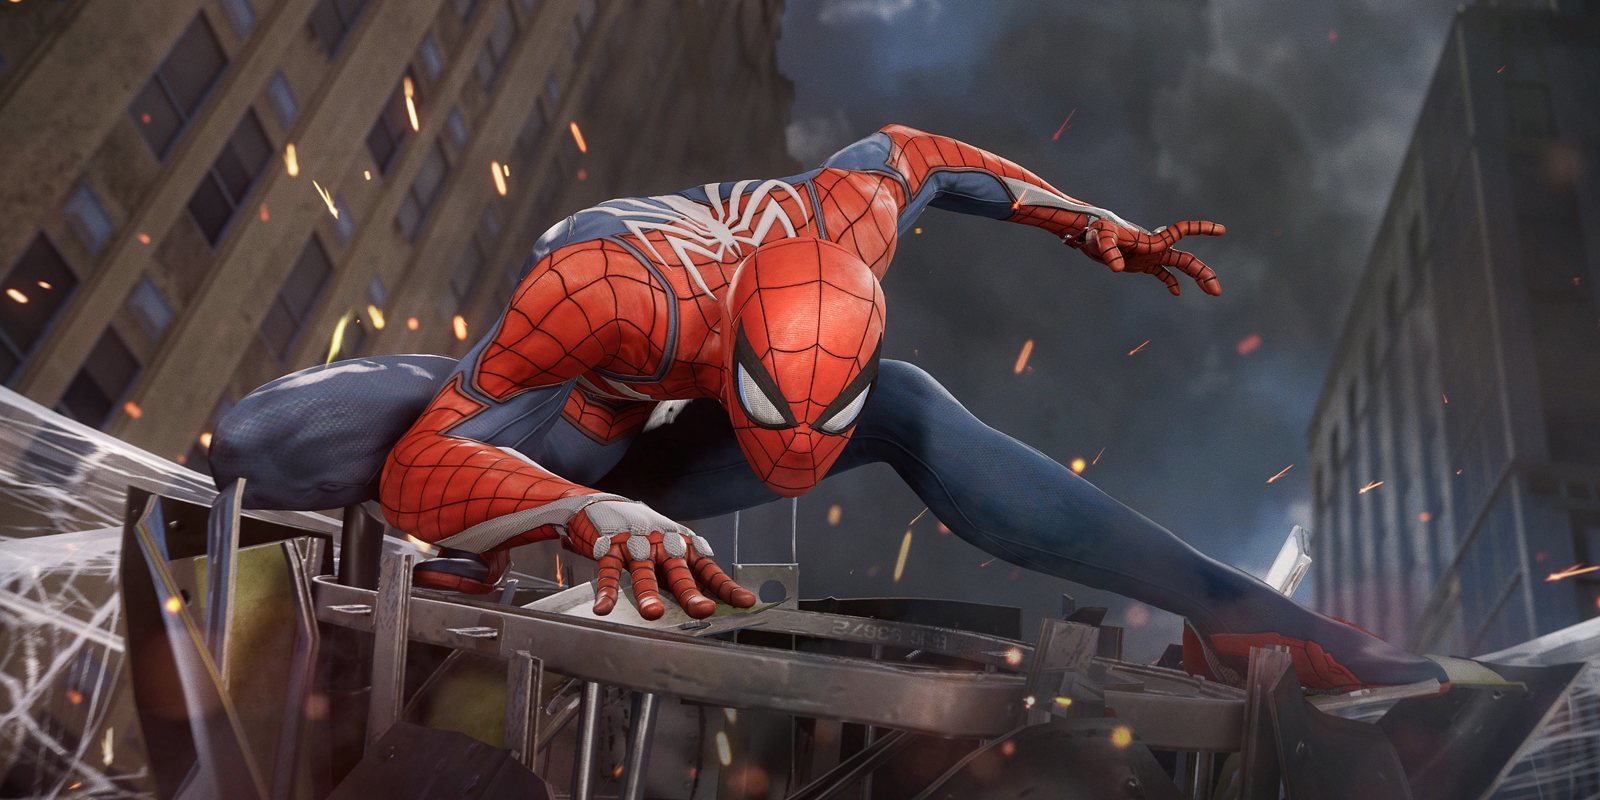 La secuela de 'Marvel's Spider-Man' llegaría en 2021 según un rumor